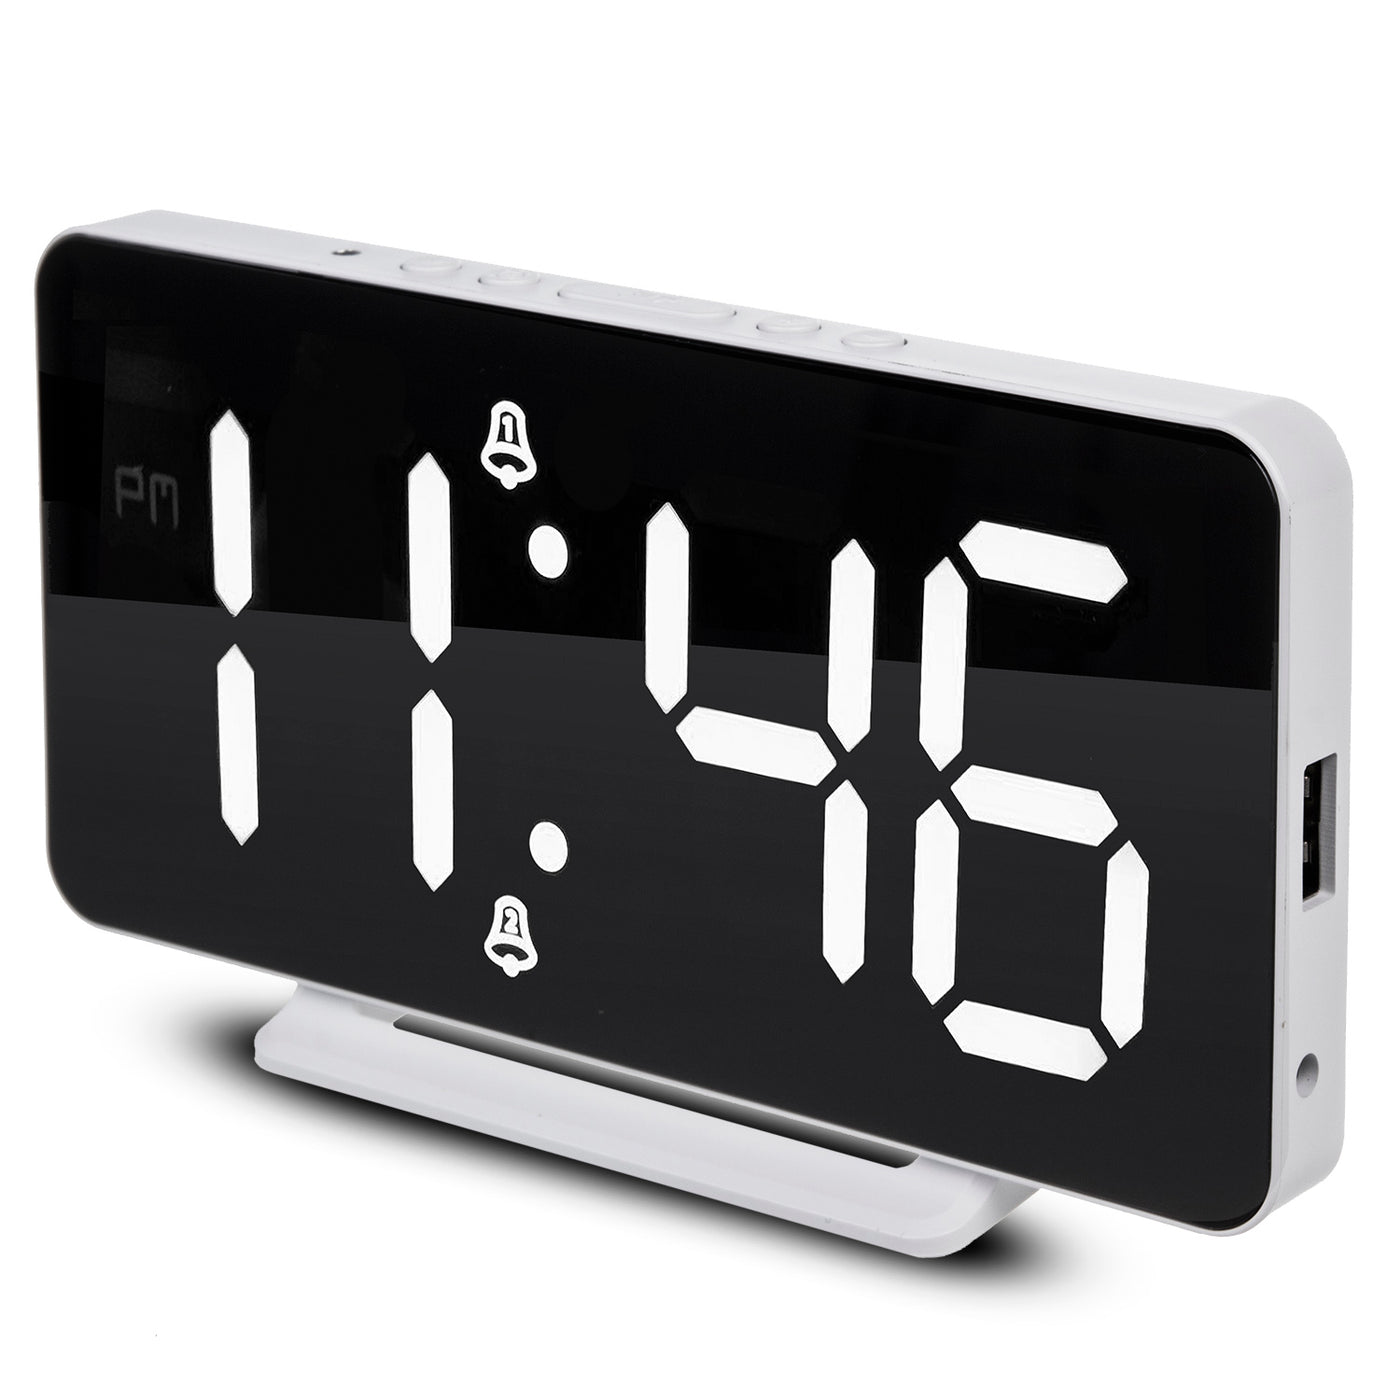 Zegar z alarmem i funkcją termometru, GreenBlue, biały, GB383